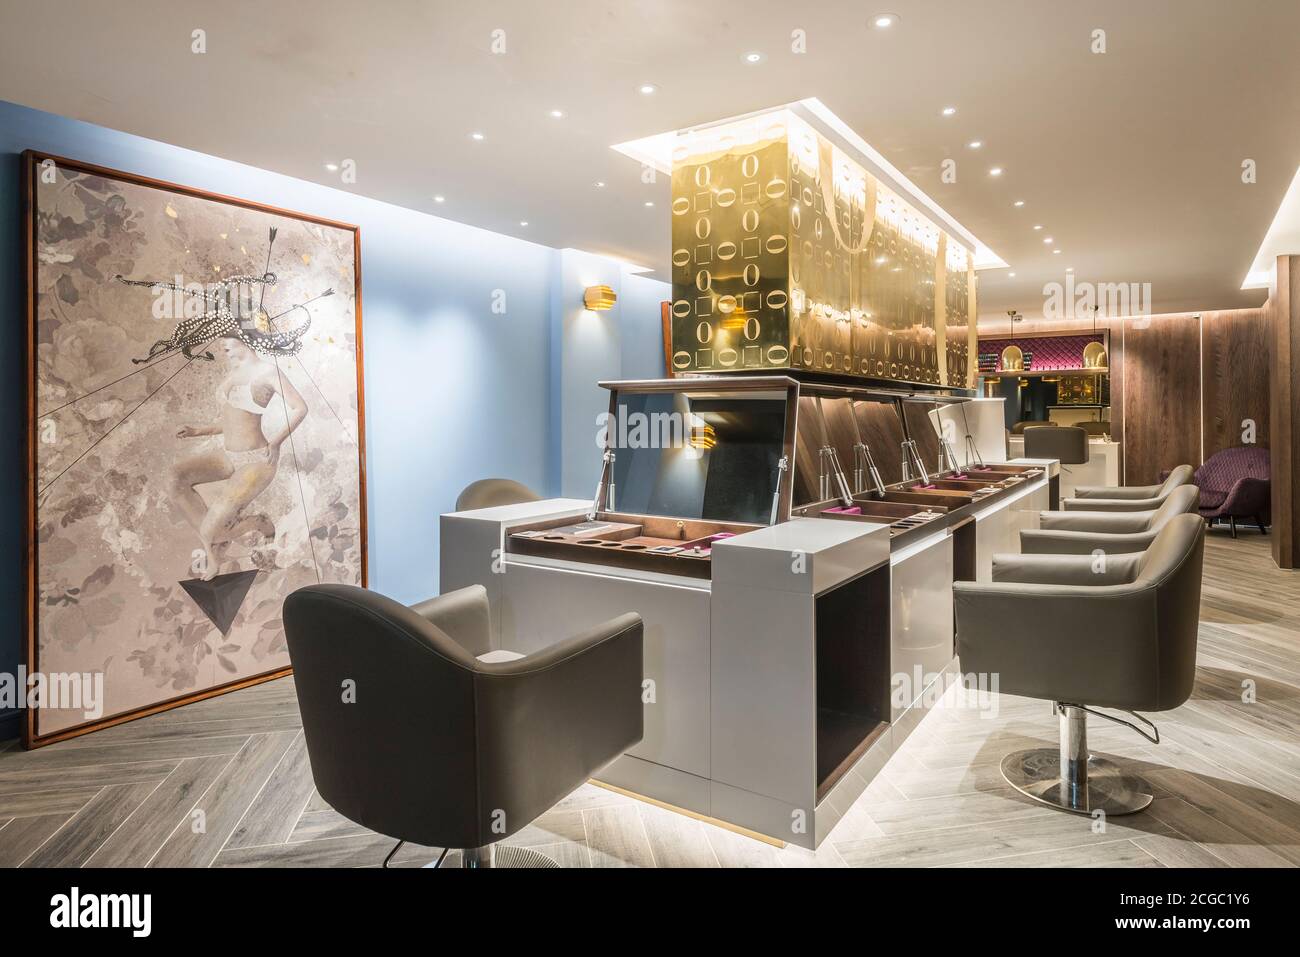 Postazioni per capelli in un lussuoso salone di parrucchiere tra il piano terra e il seminterrato con mobili su misura situato nel cuore di Soho, Londra, Regno Unito. Progetto completato nel novembre 2017. Foto Stock